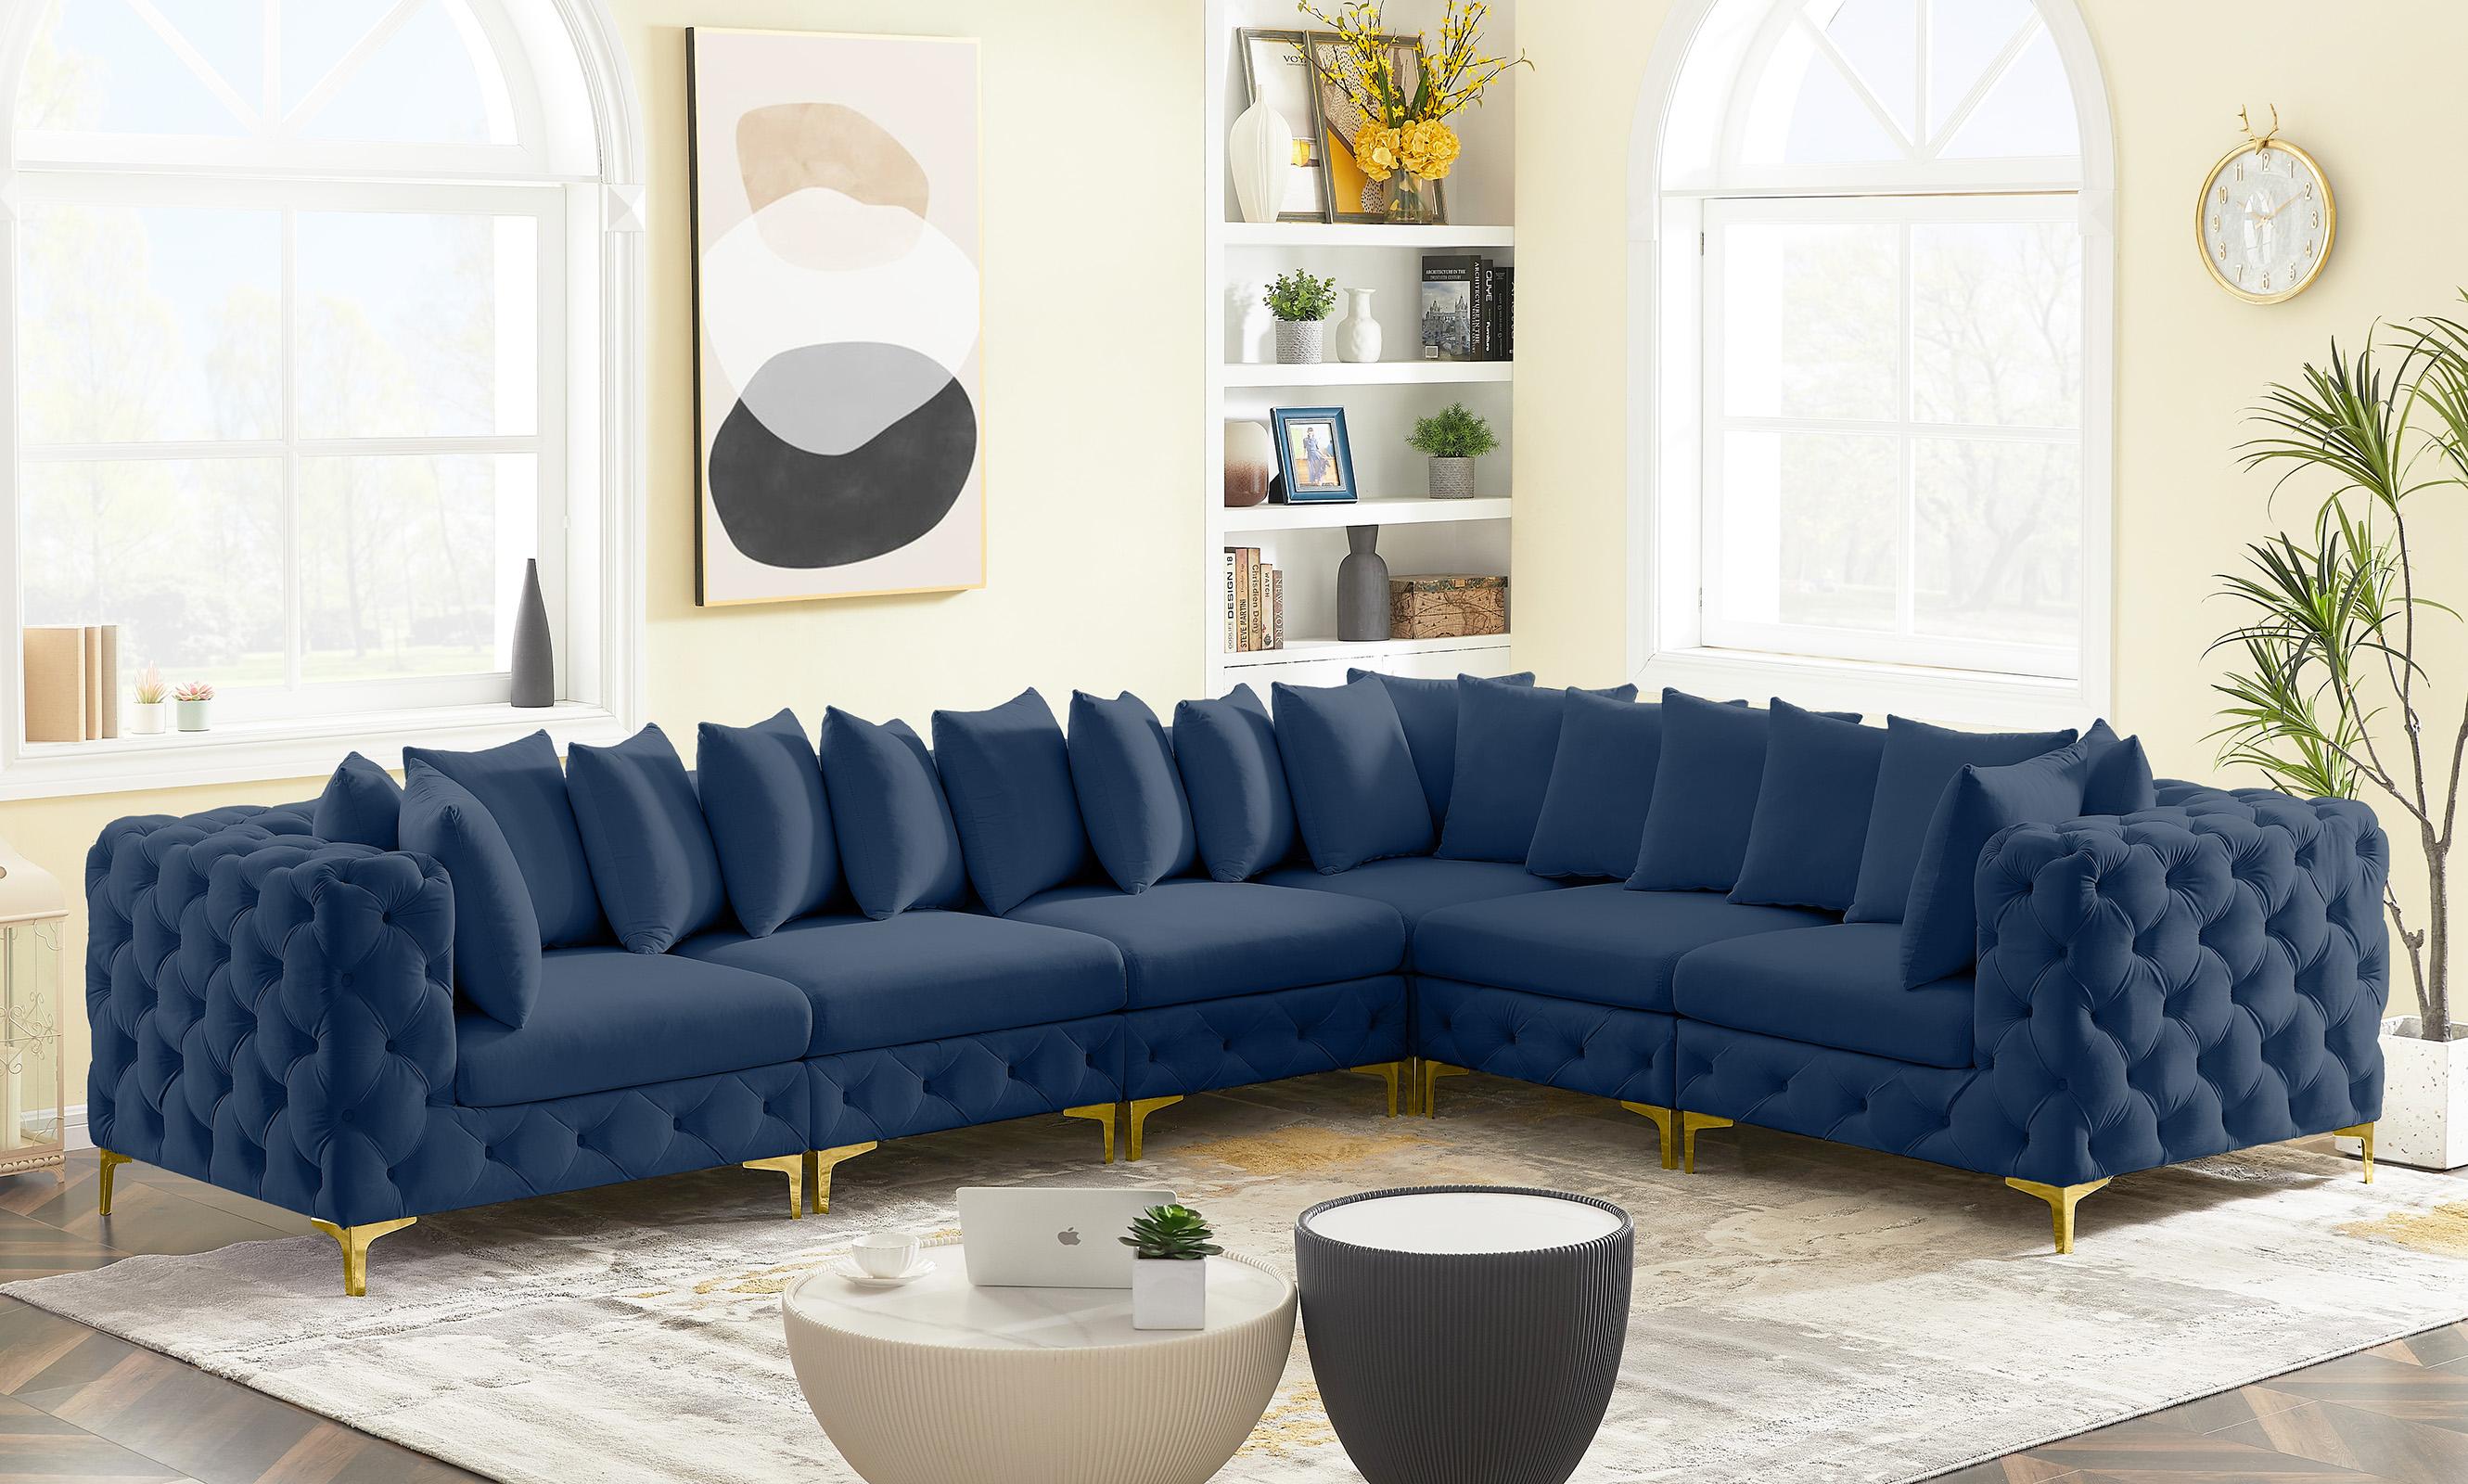 

    
686Navy-Sec6A Meridian Furniture Modular Sectional Sofa
